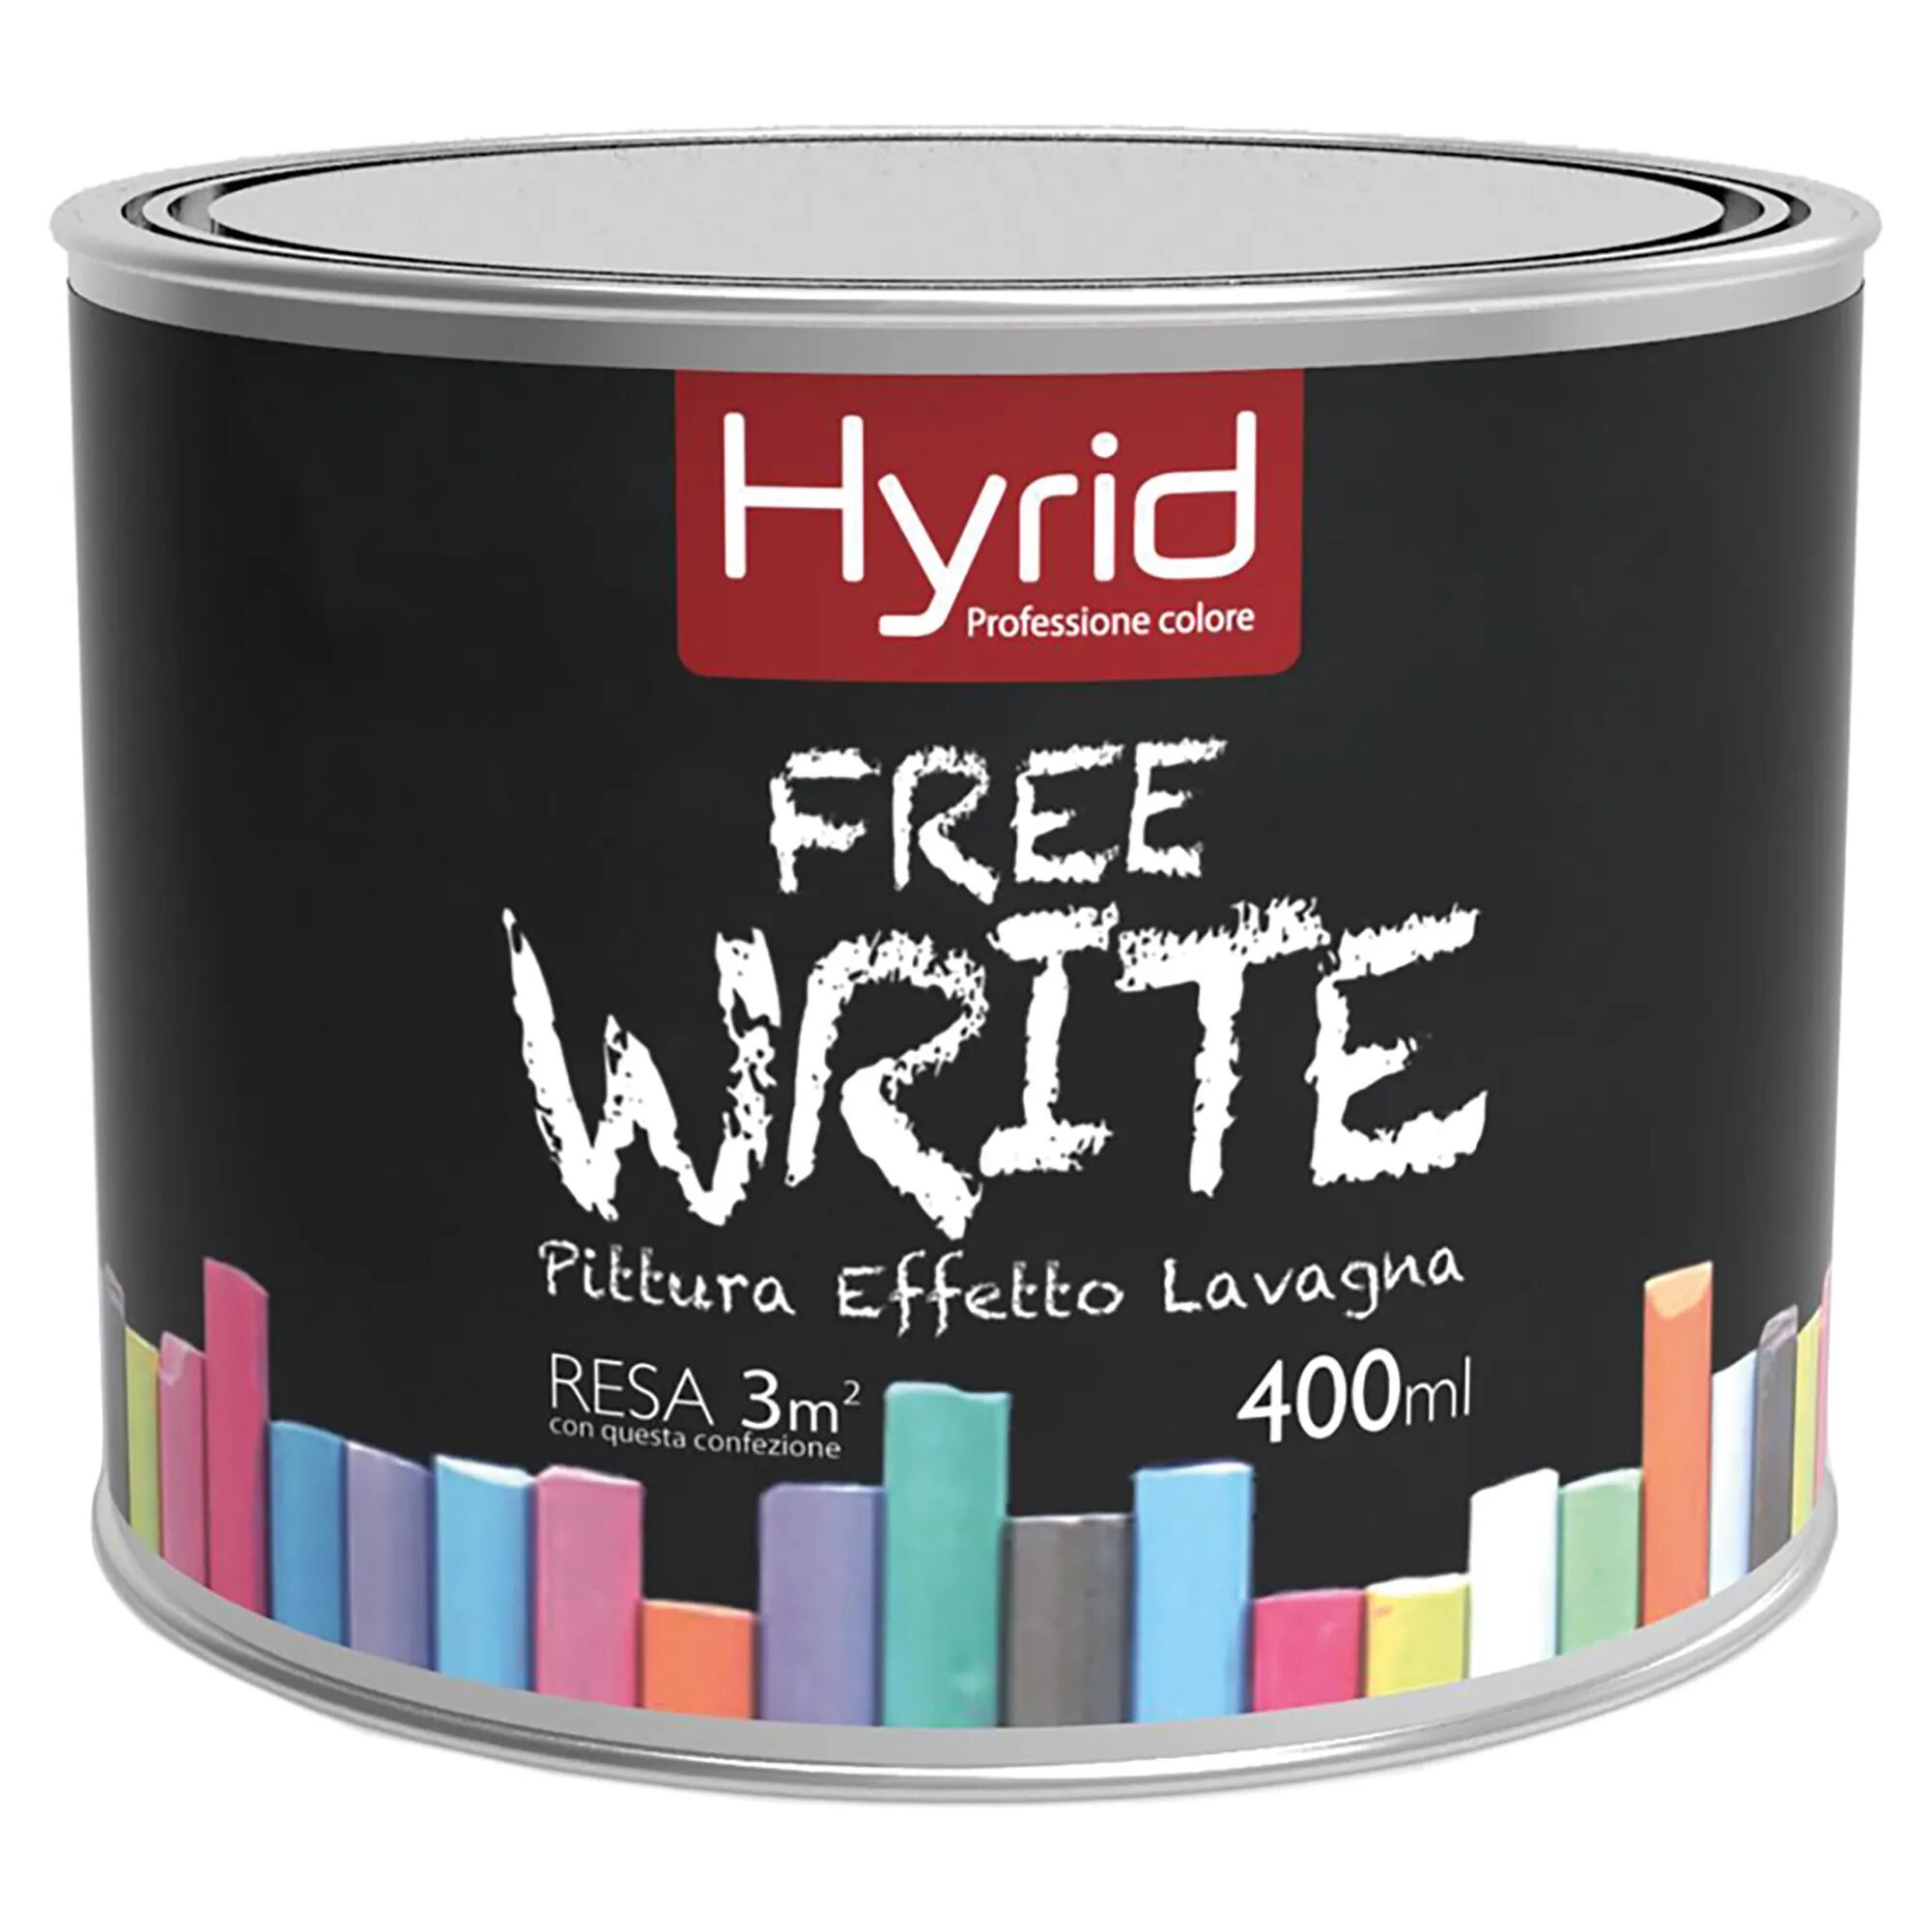 hyrid by covema pittura effetto lavagna hyrid 400 ml free write colore nero 5-6 m² con 1 l a 2 mani